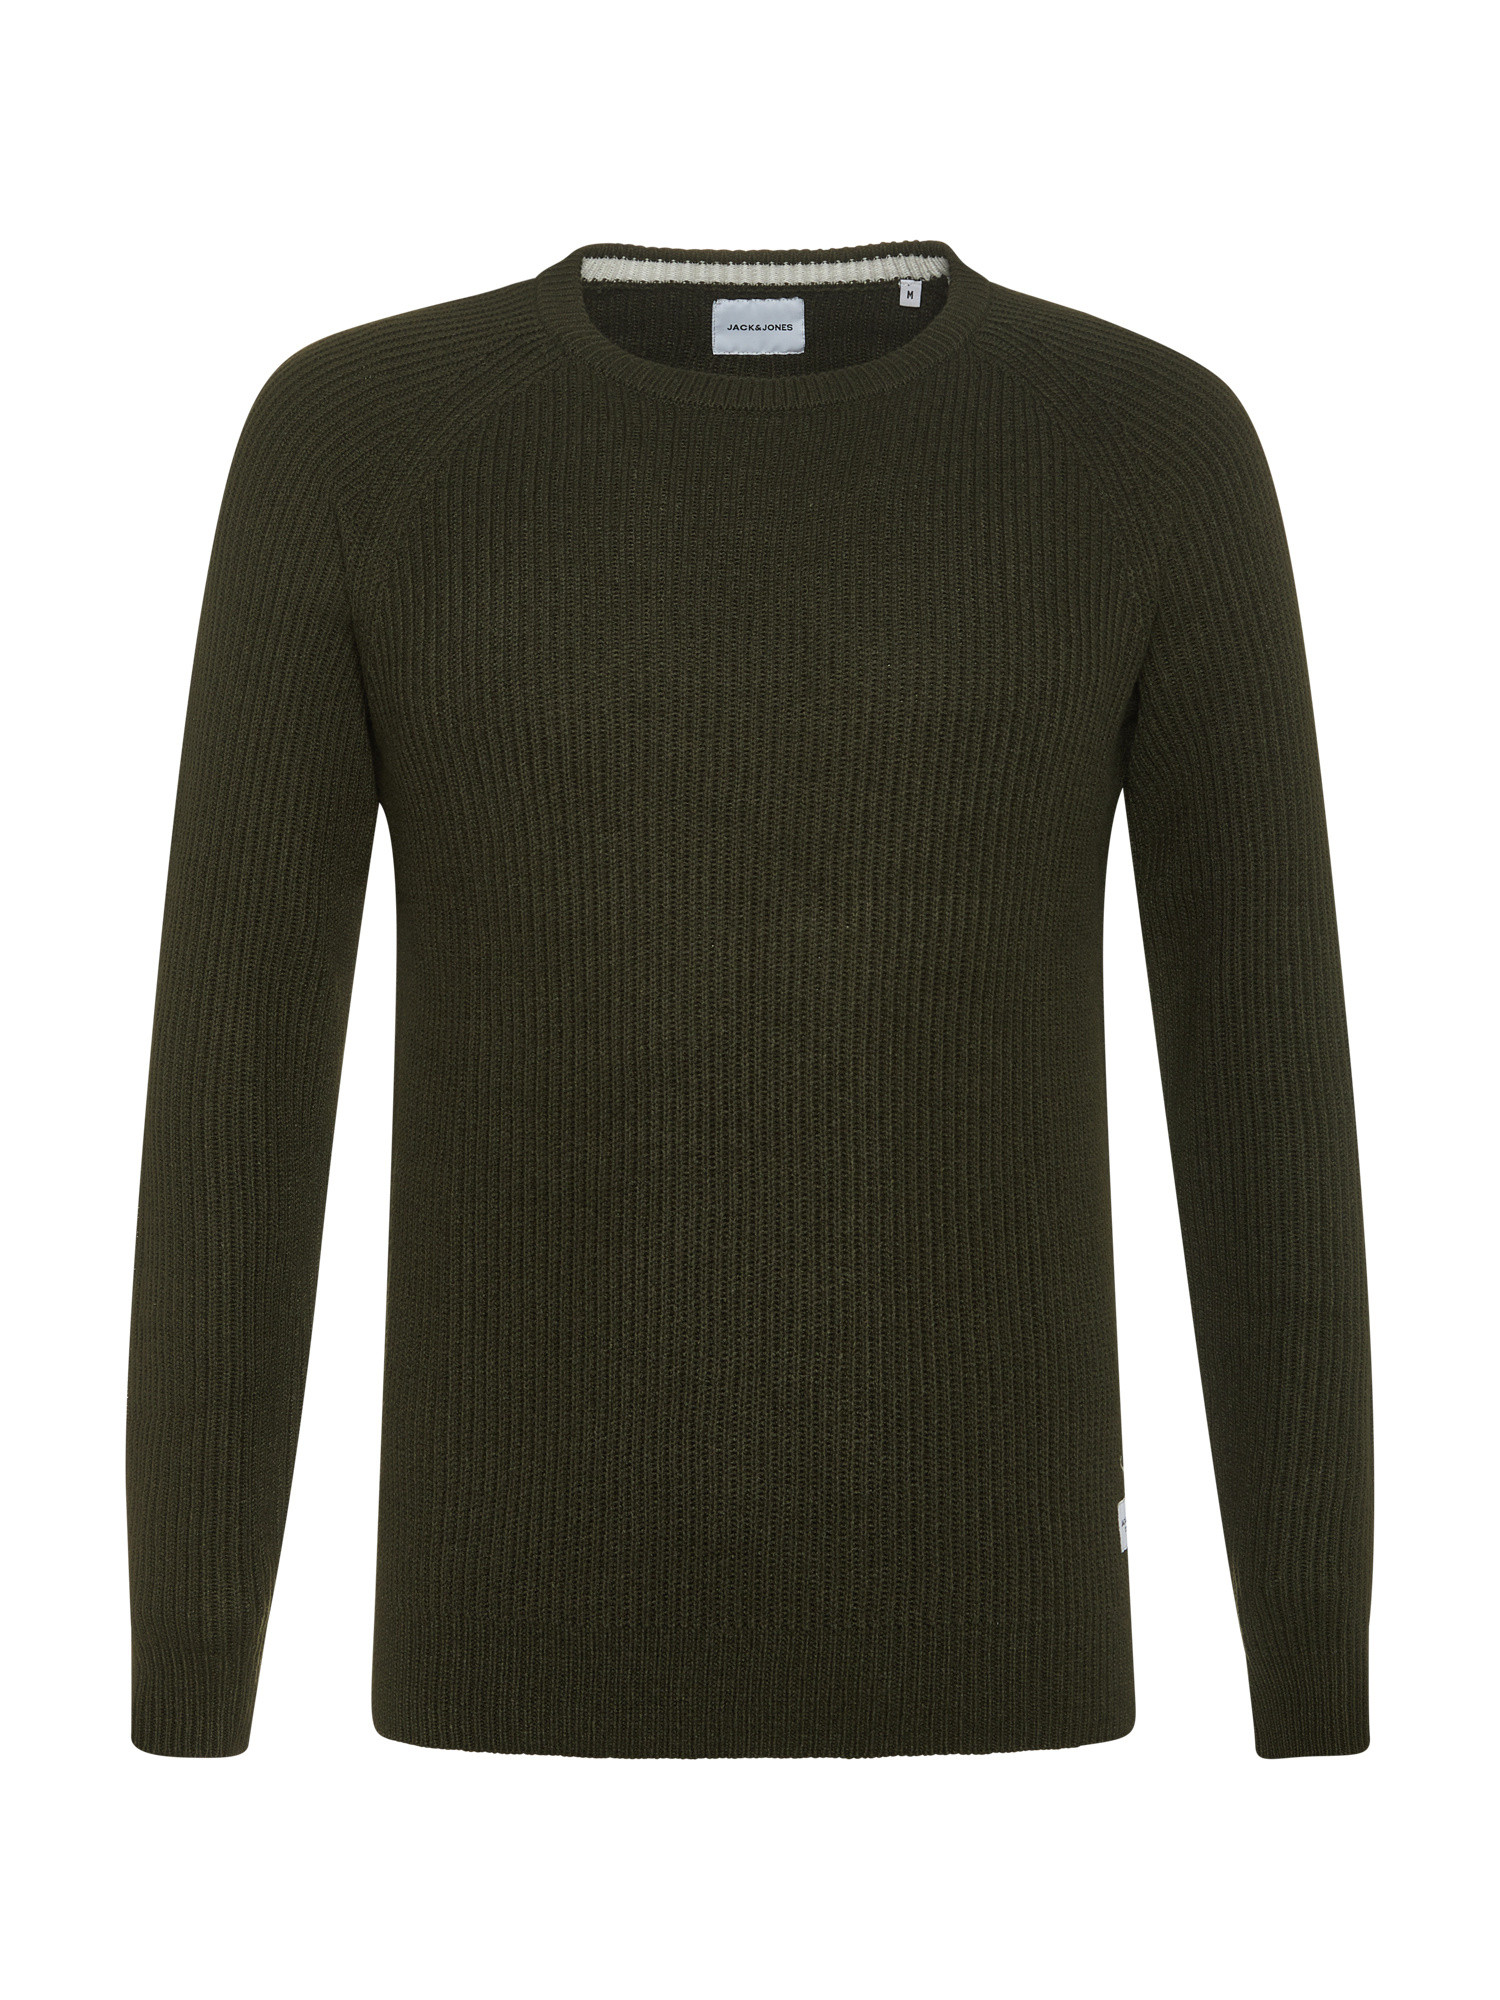 Вязаный свитер в рубчик Jack & Jones, темно-зеленый вязаный свитер с круглым вырезом кремовый quzu